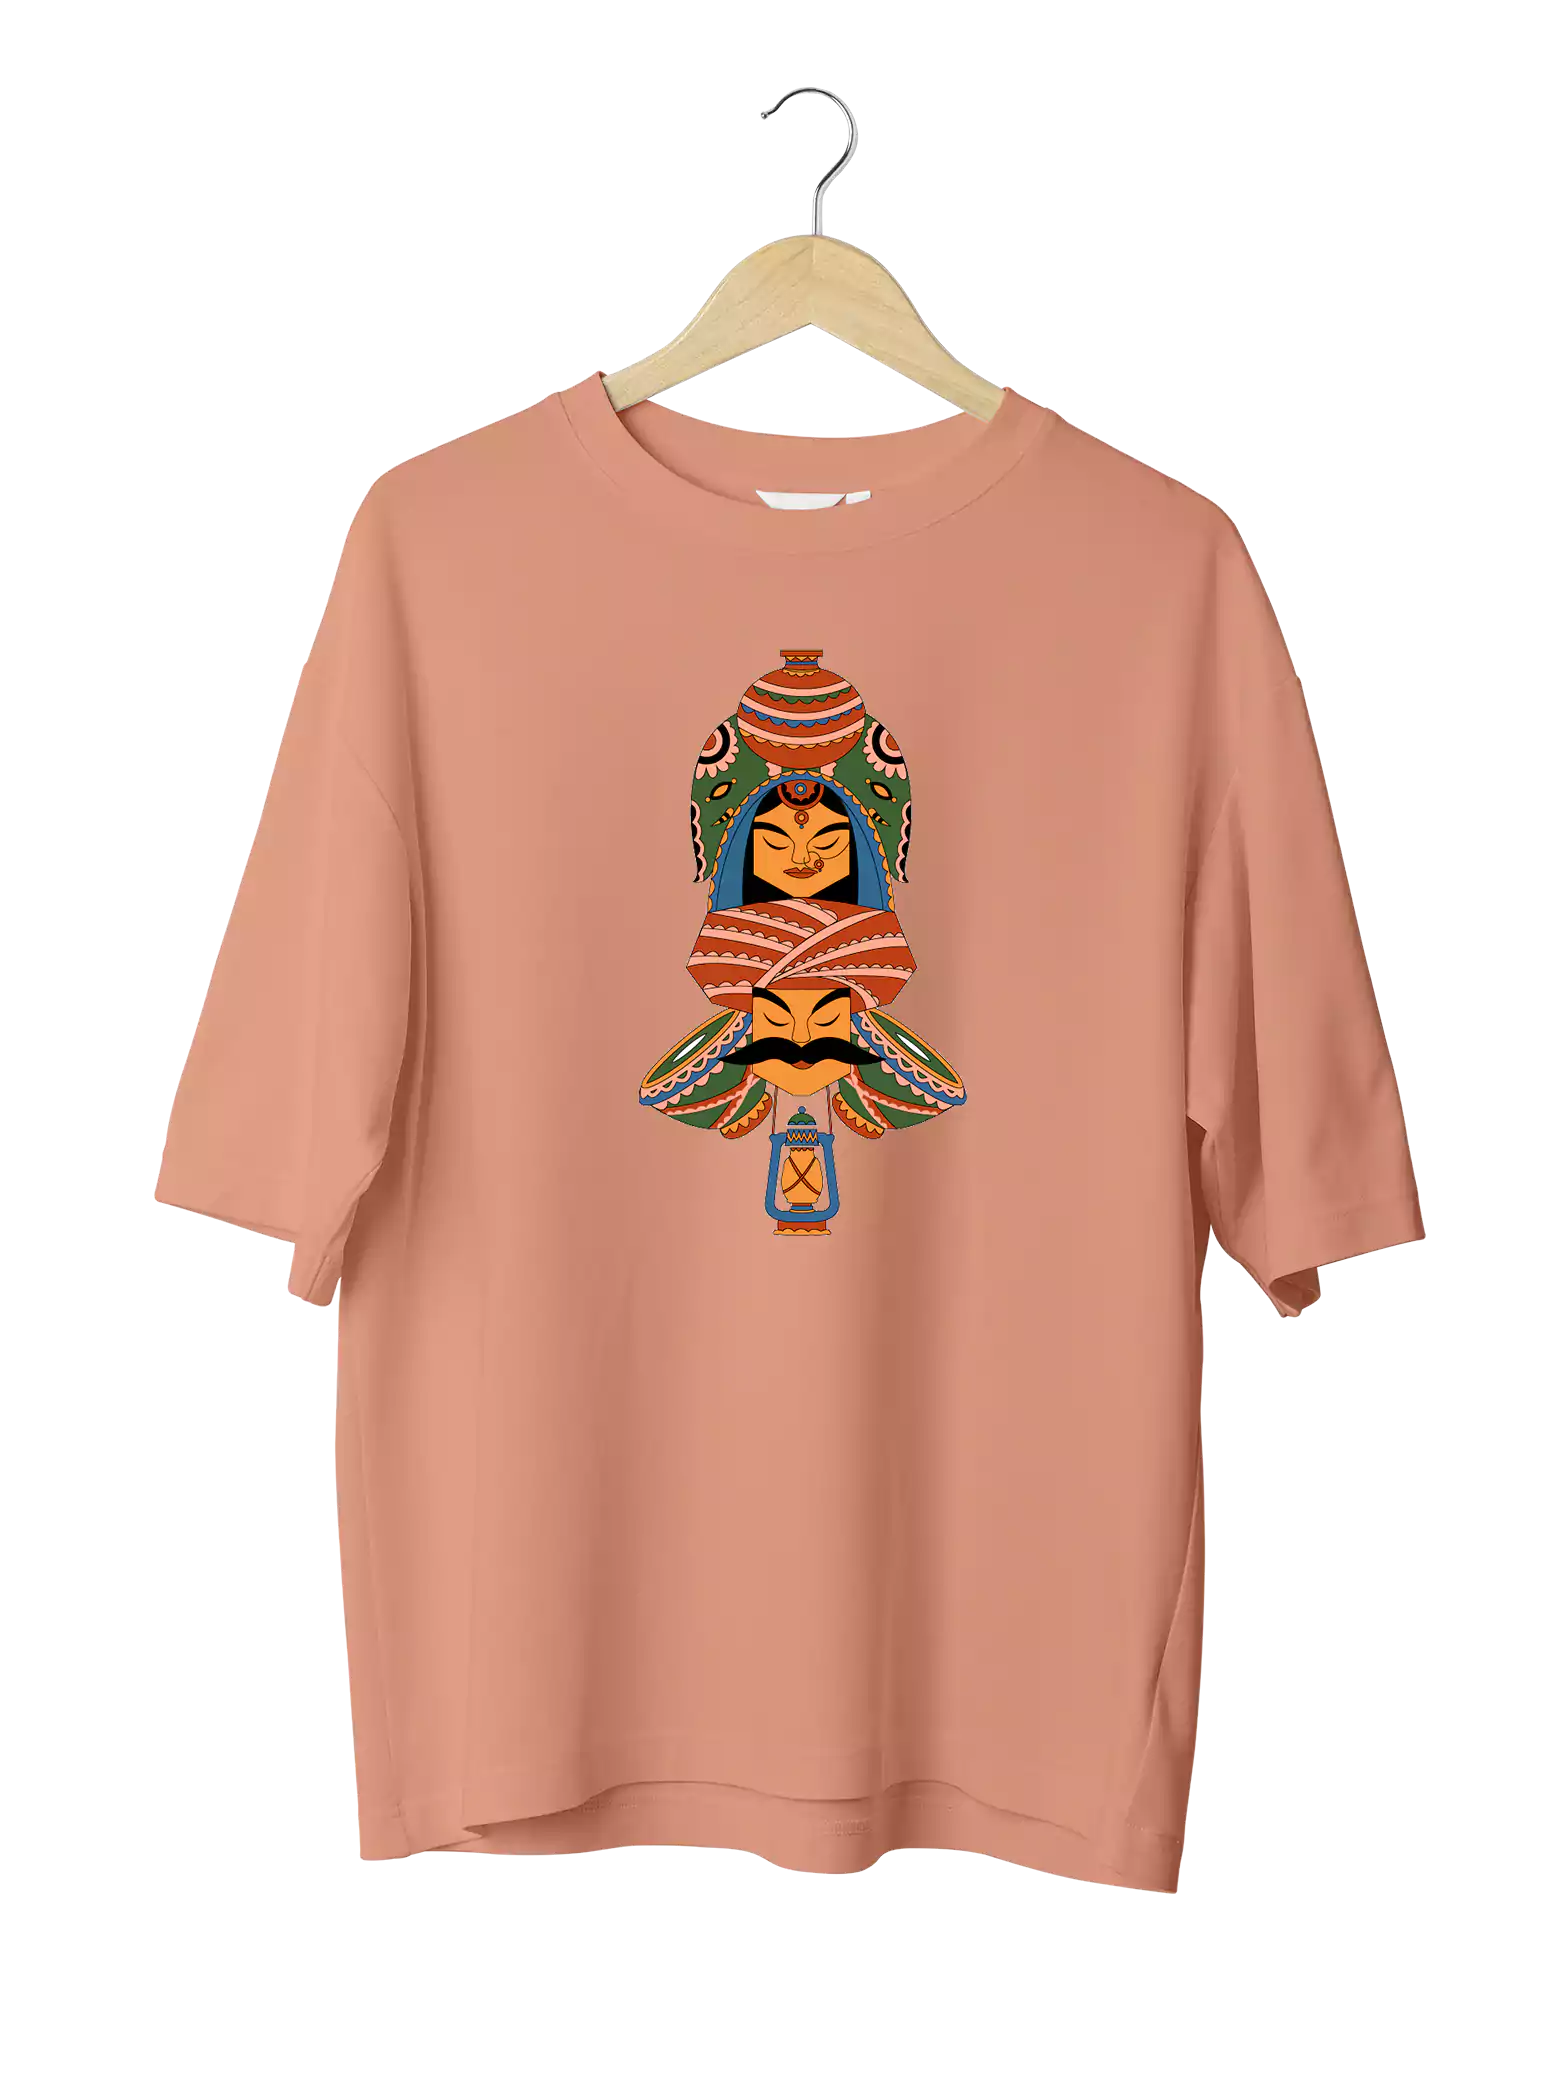 Buy Rajasthan Totem Oversized  Drop-Shoulder T-Shirt